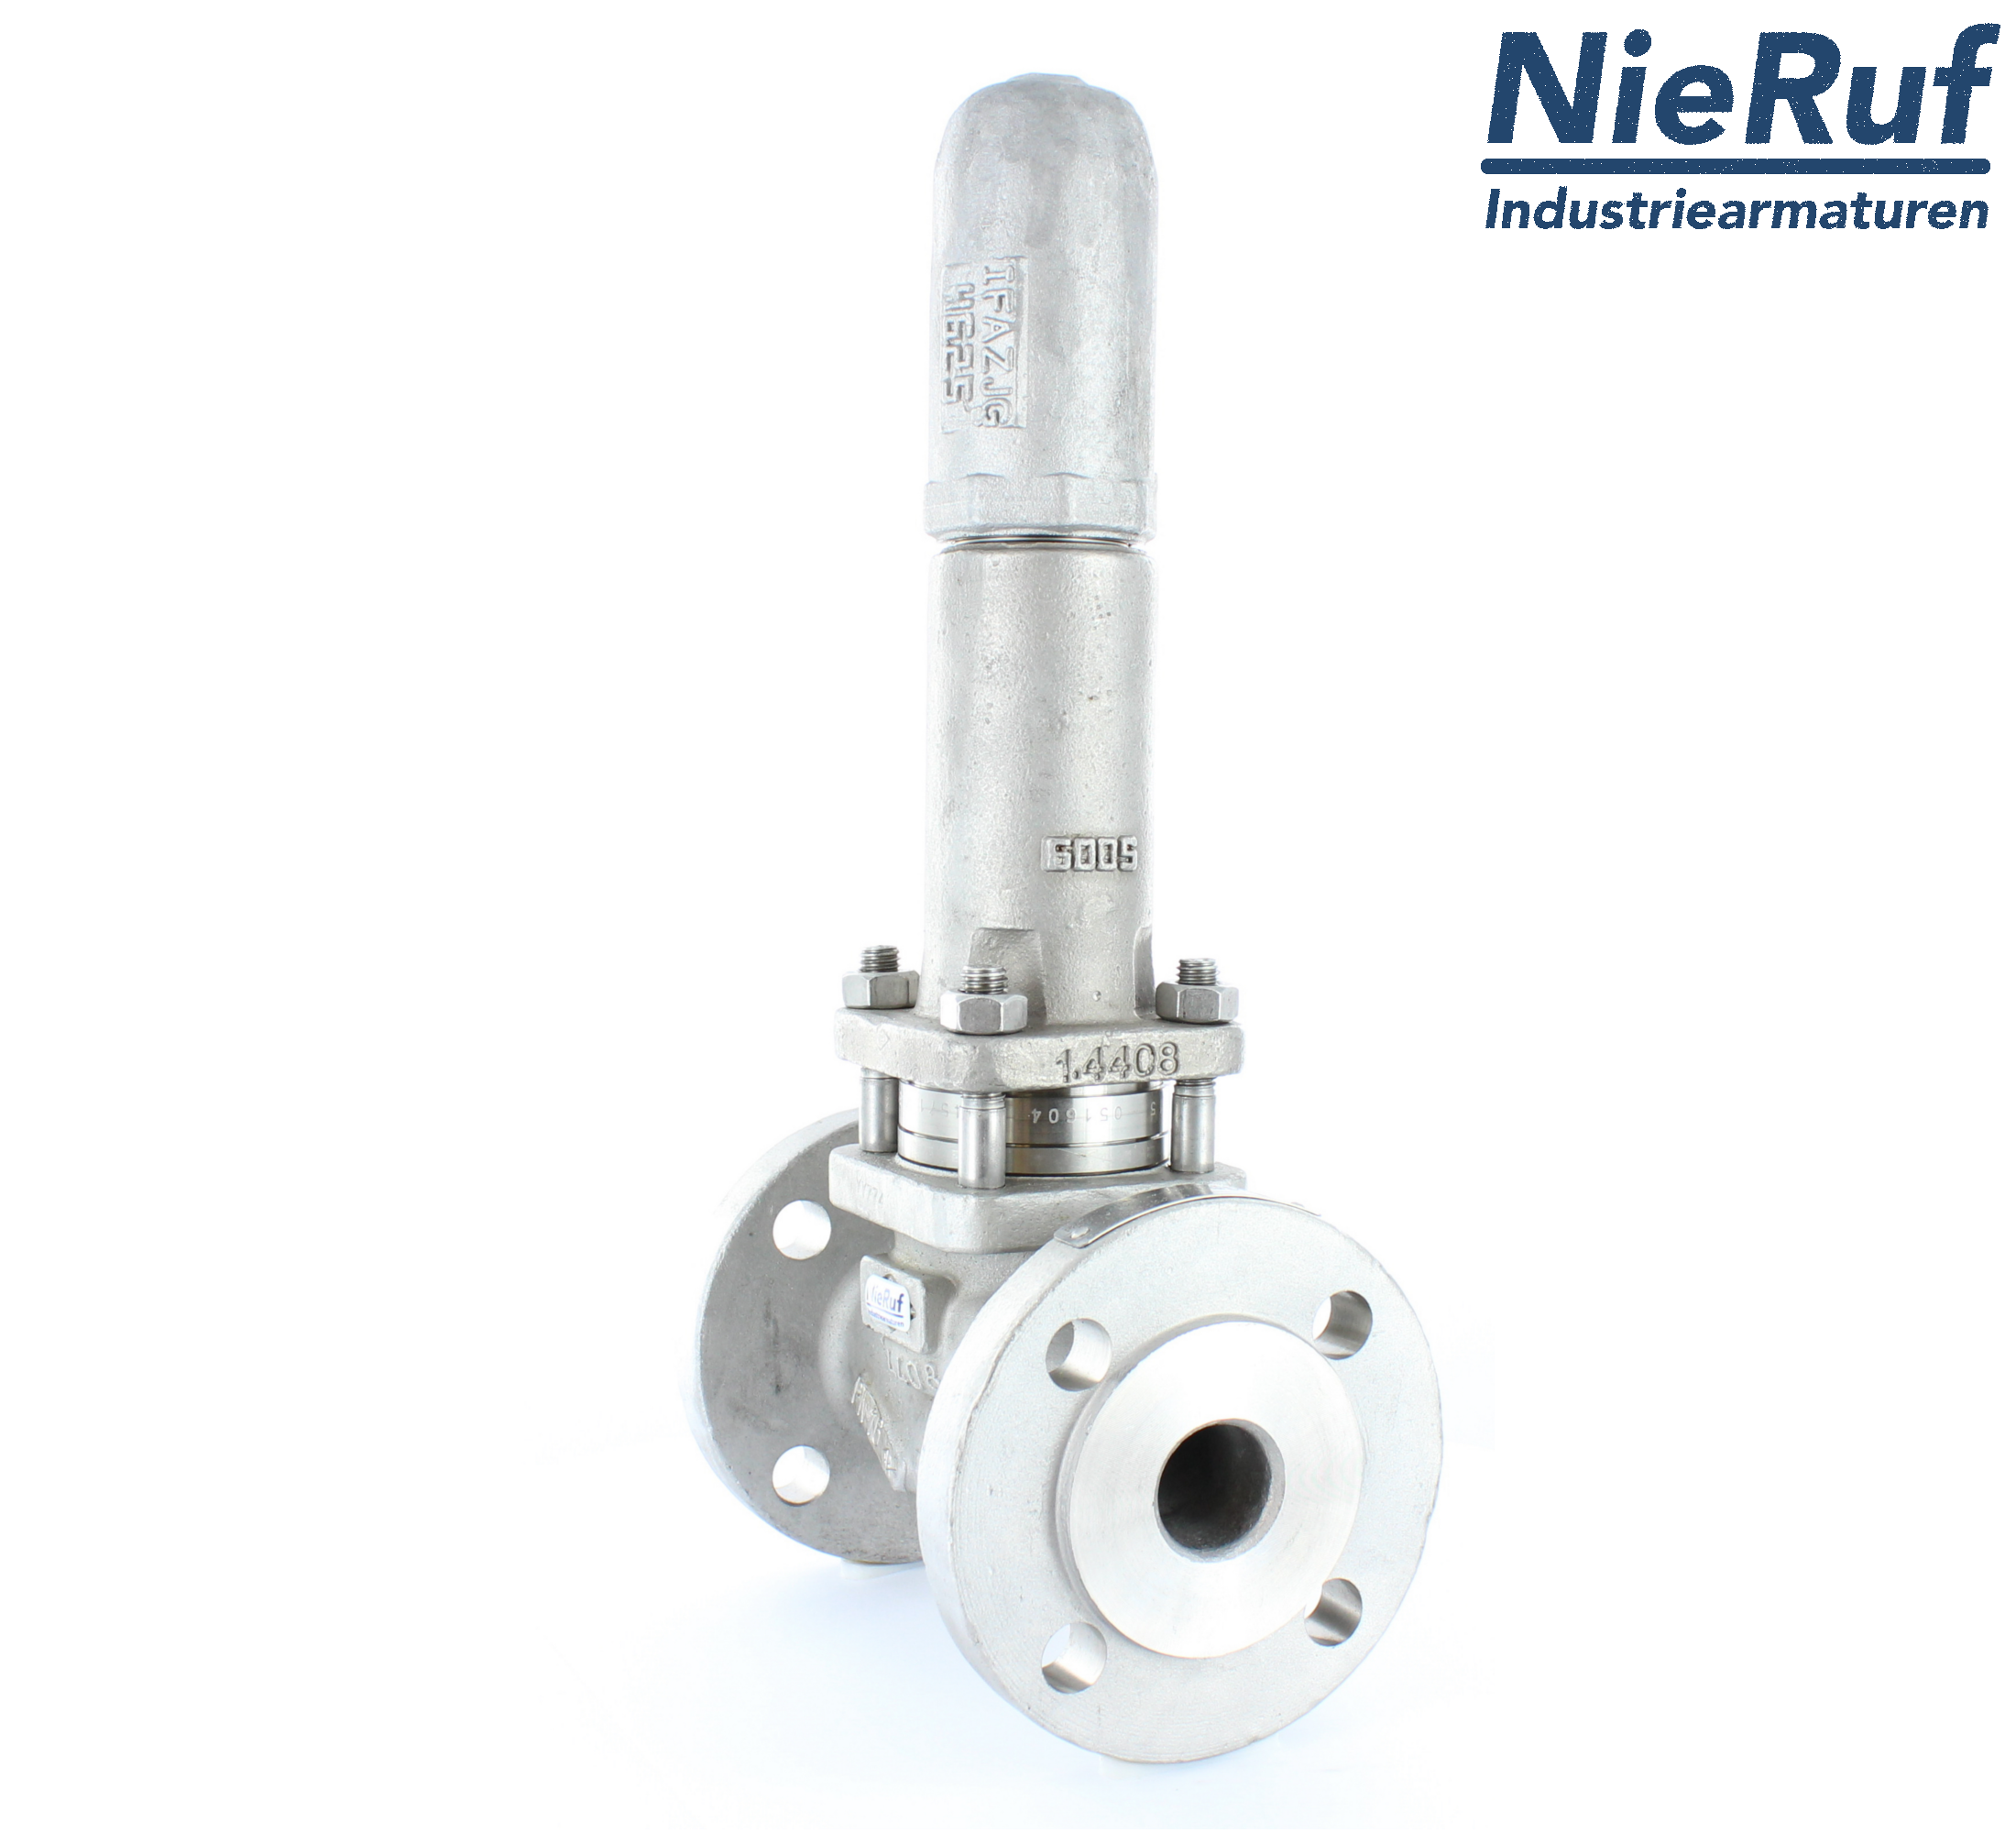 piston overflow valve DN 32 UV13 cast iron 1.0619+N 0,5 - 1,5 bar